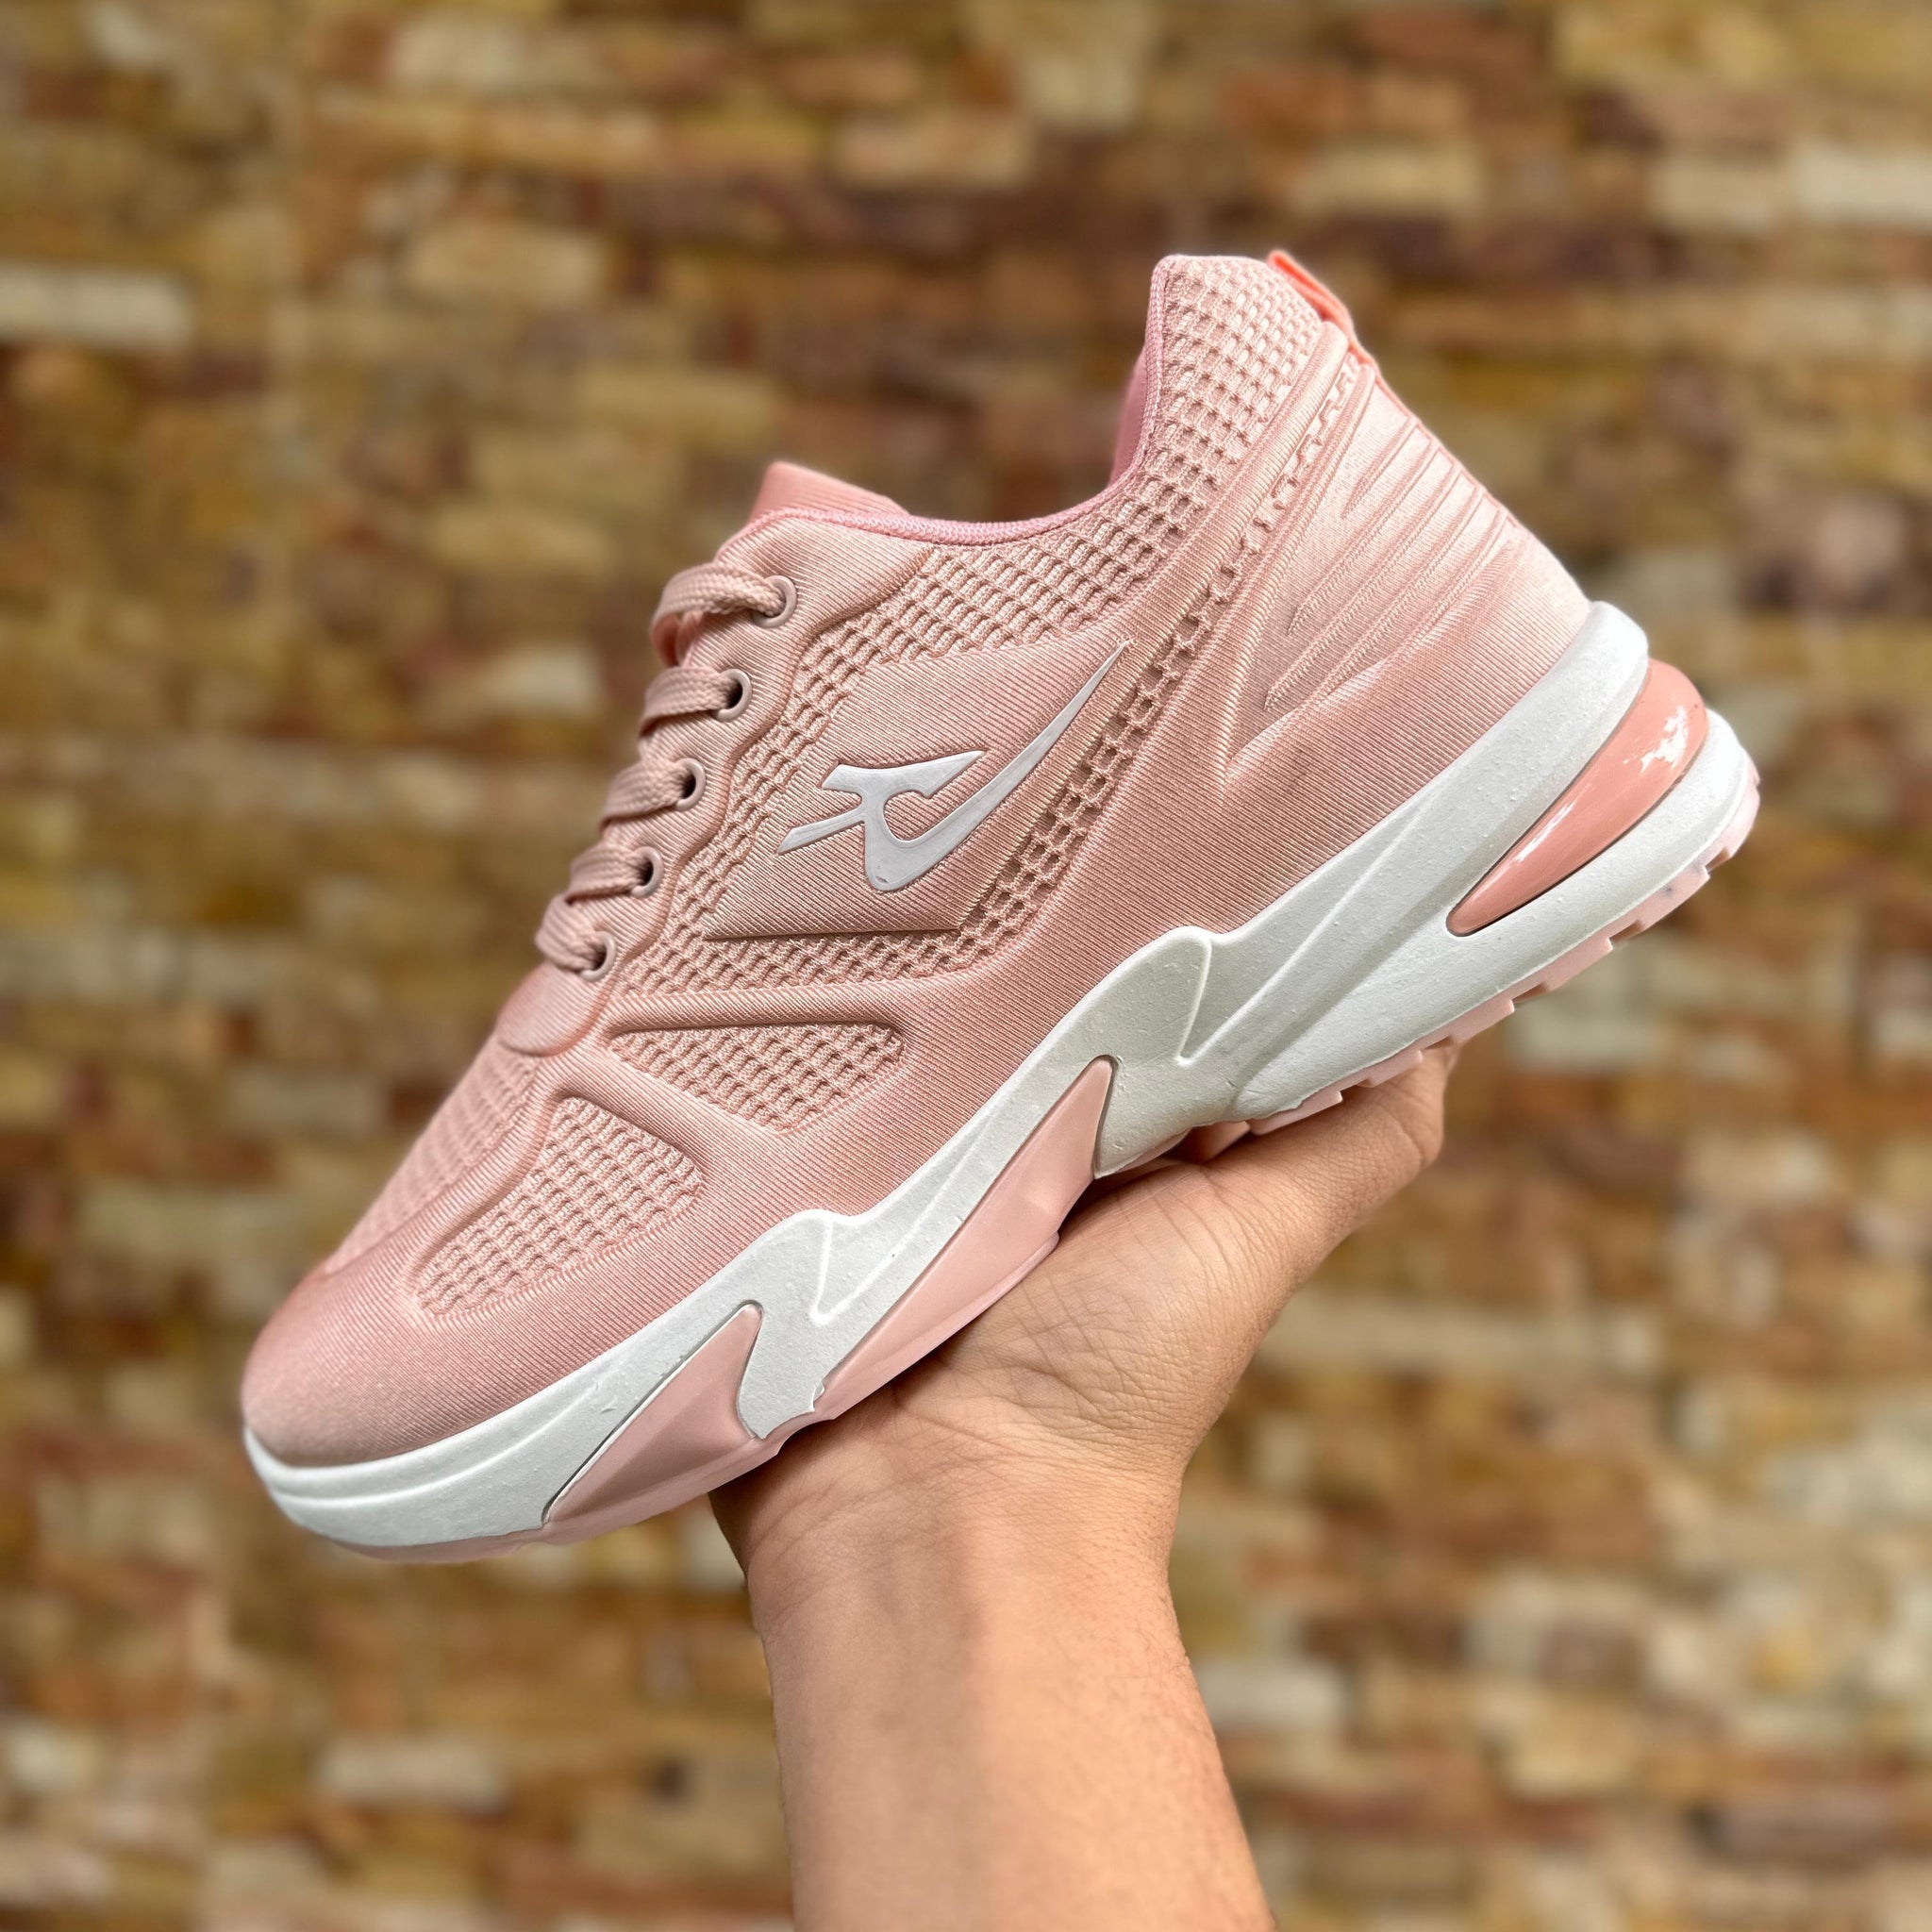 Pink Kicks for Women